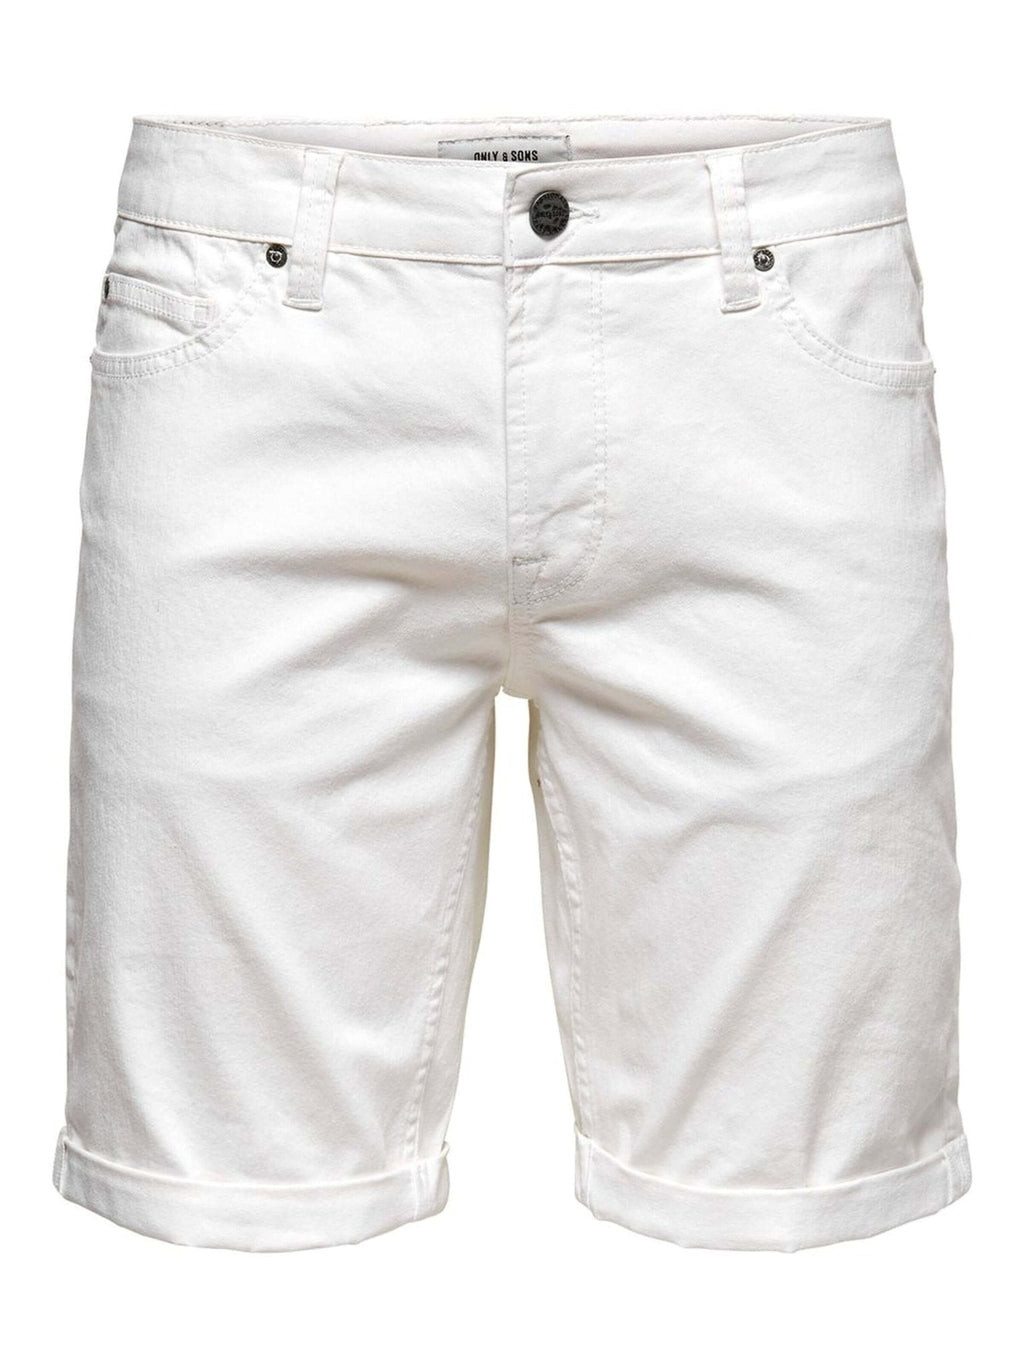 Ply Stretch Shorts - White